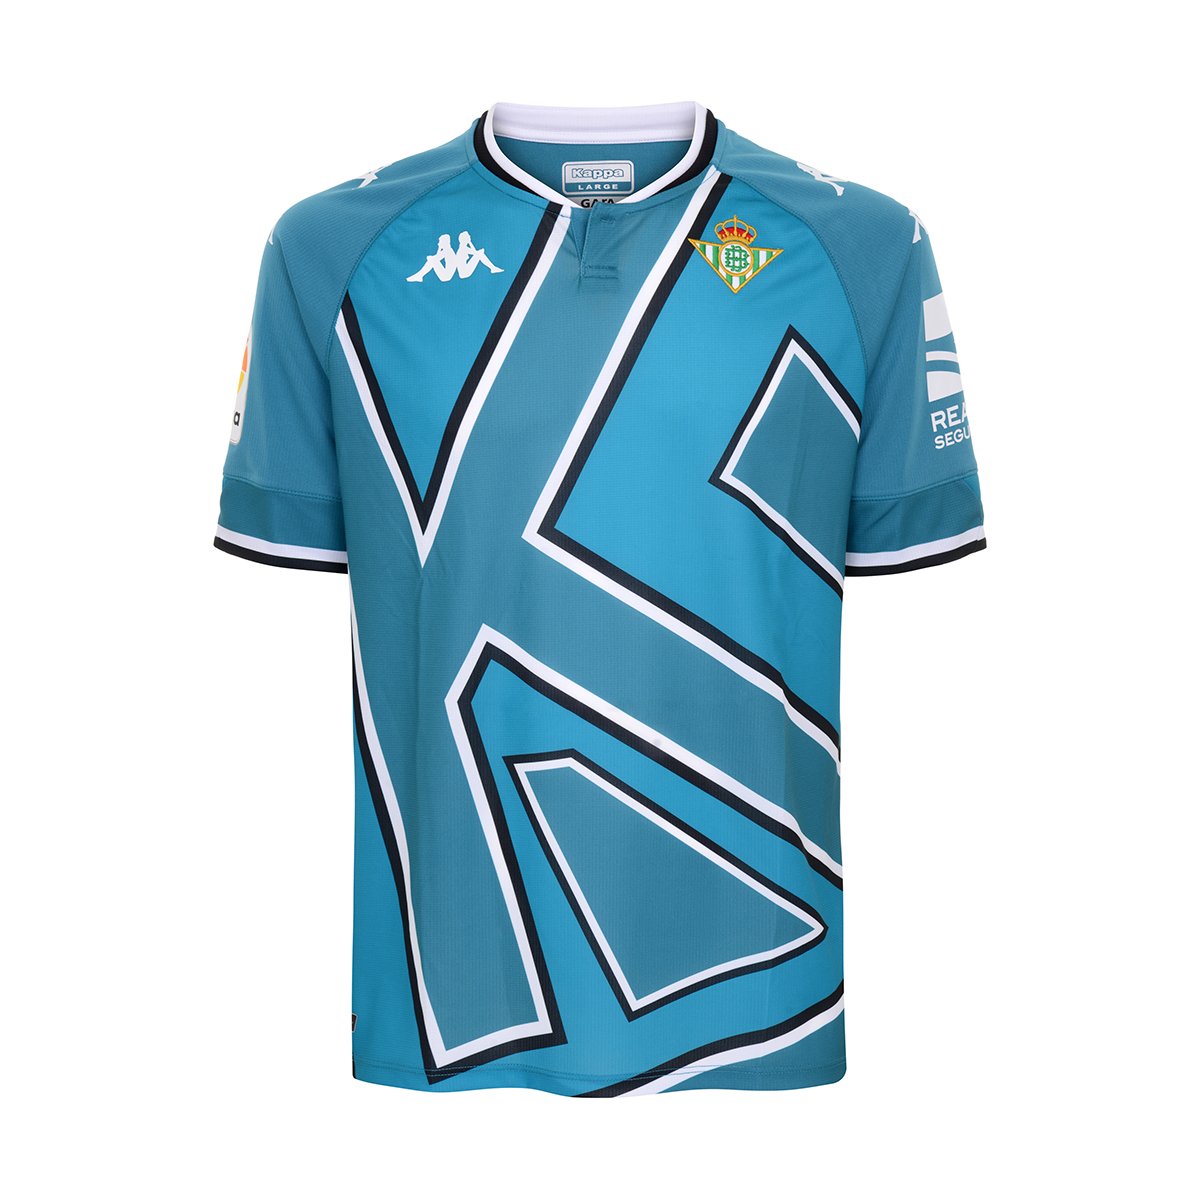 Camiseta Kombat BWT Alpine F1 Team Azul Niño – Kappa España